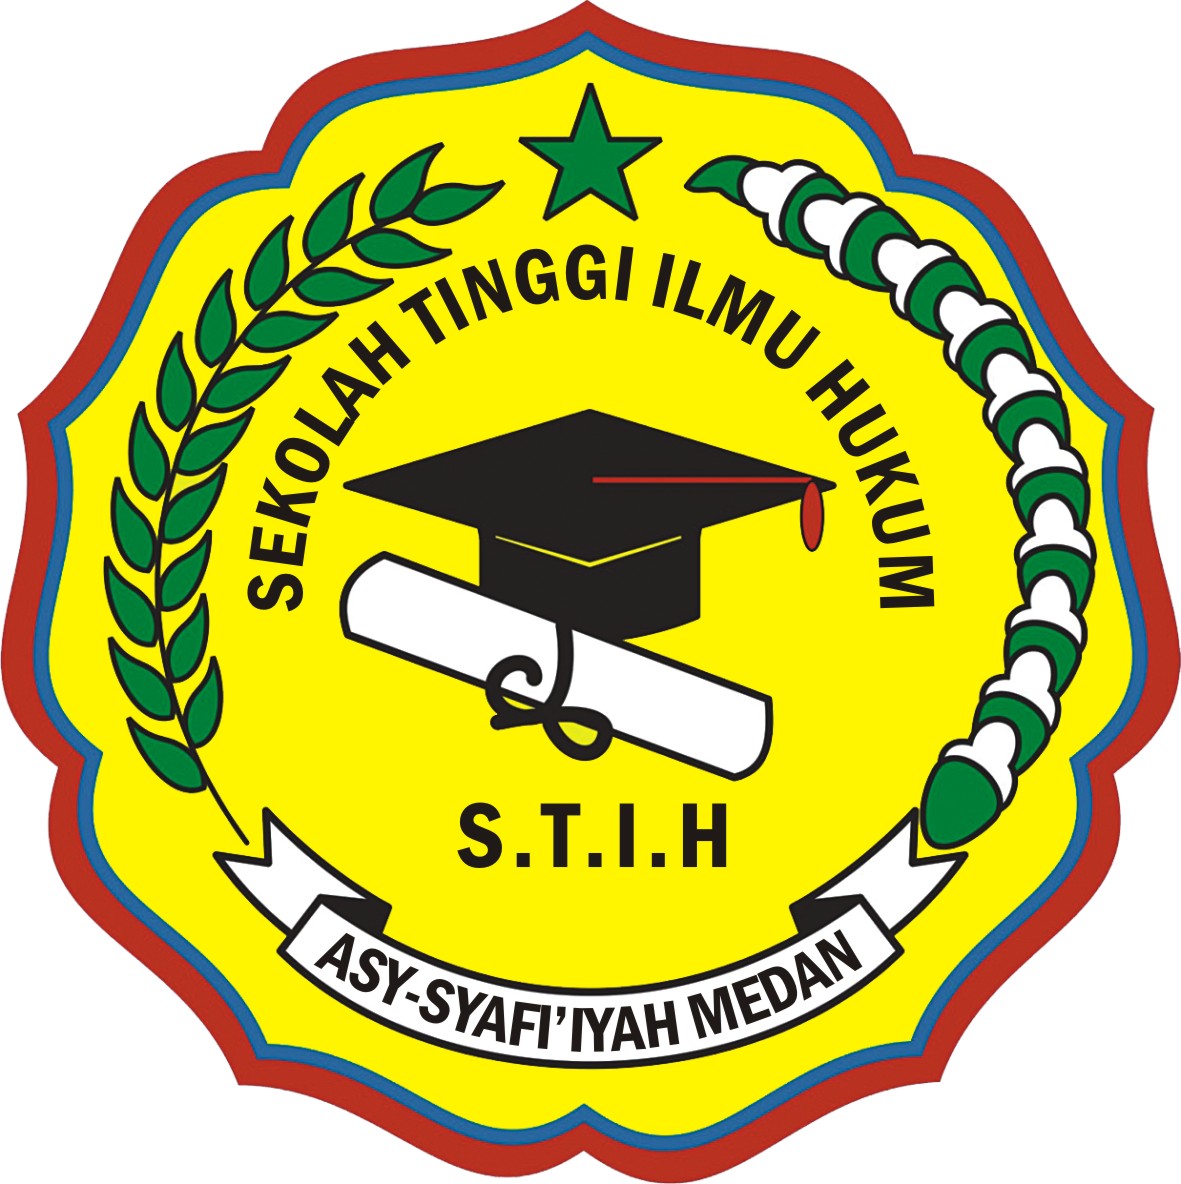 logo Sekolah Tinggi Ilmu Hukum Asy-Syafi iyah Medan